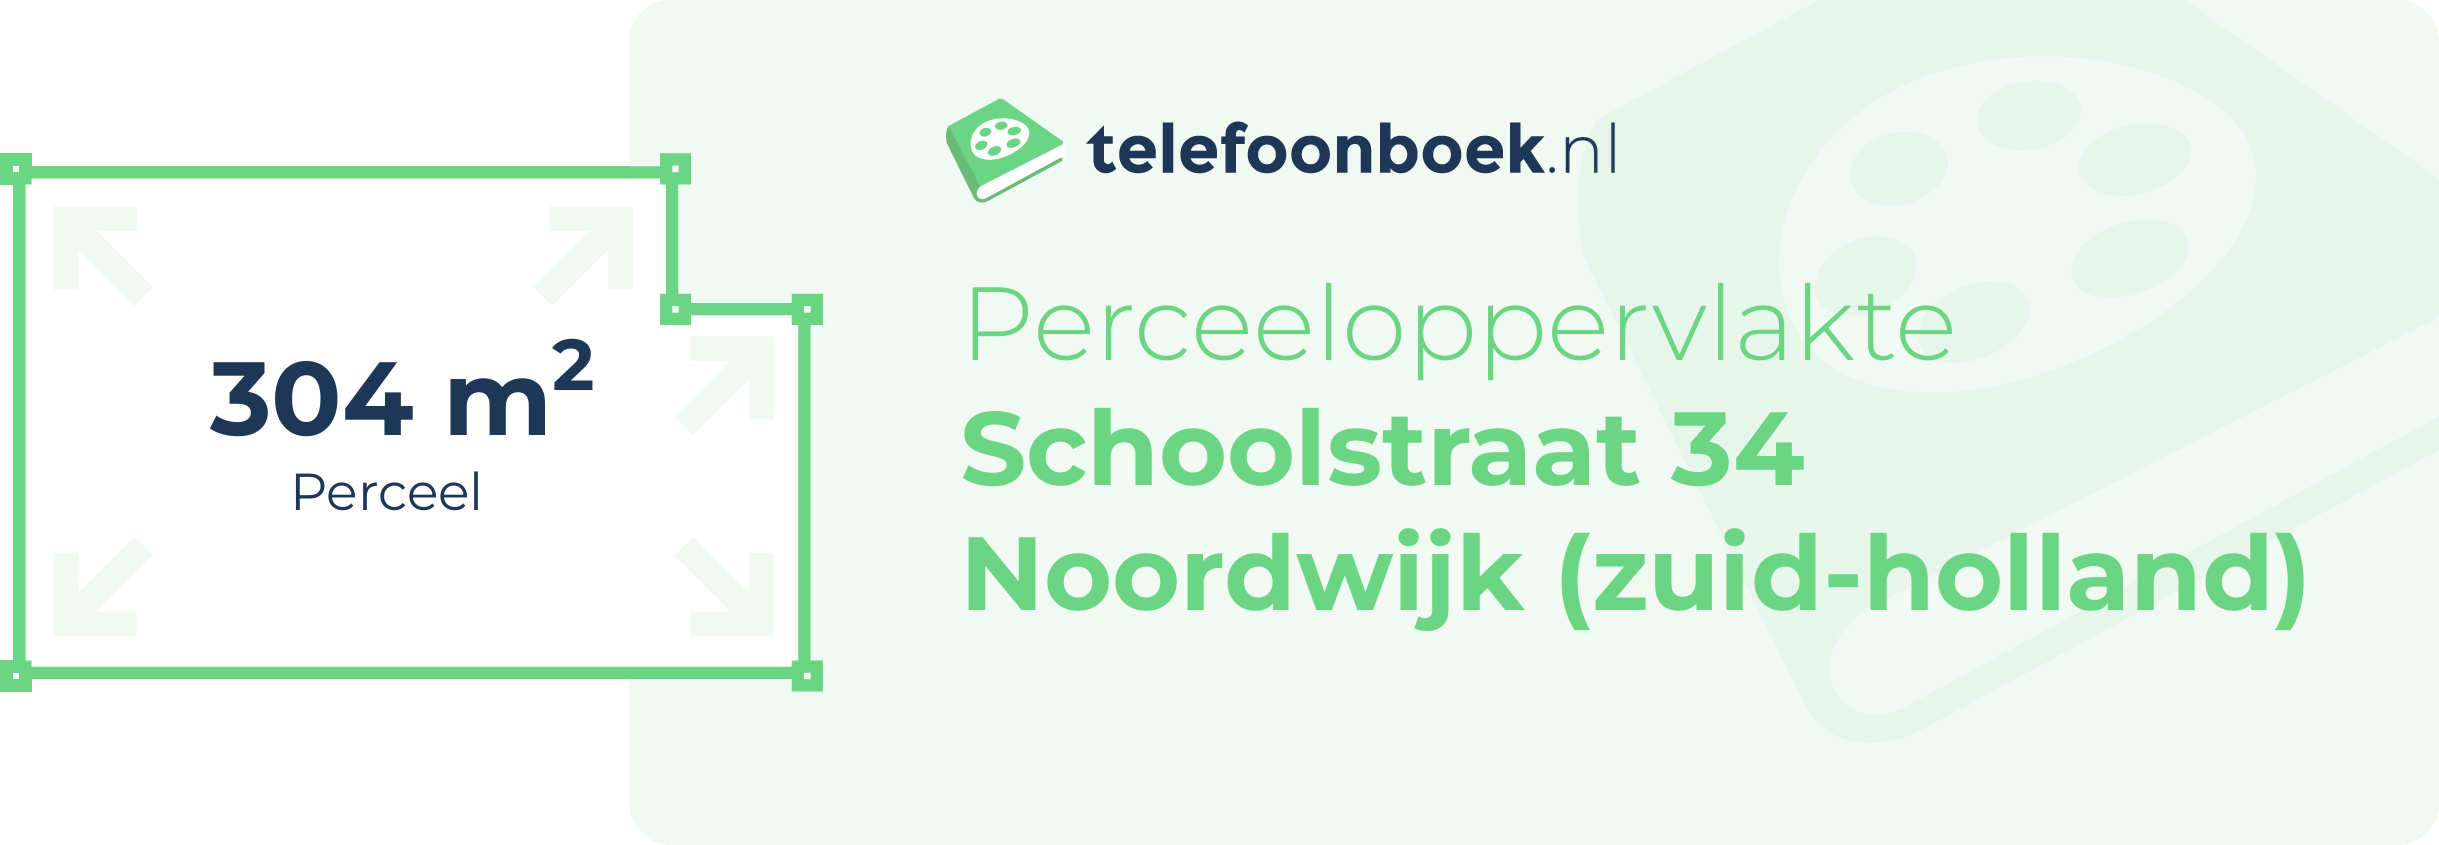 Perceeloppervlakte Schoolstraat 34 Noordwijk (Zuid-Holland)